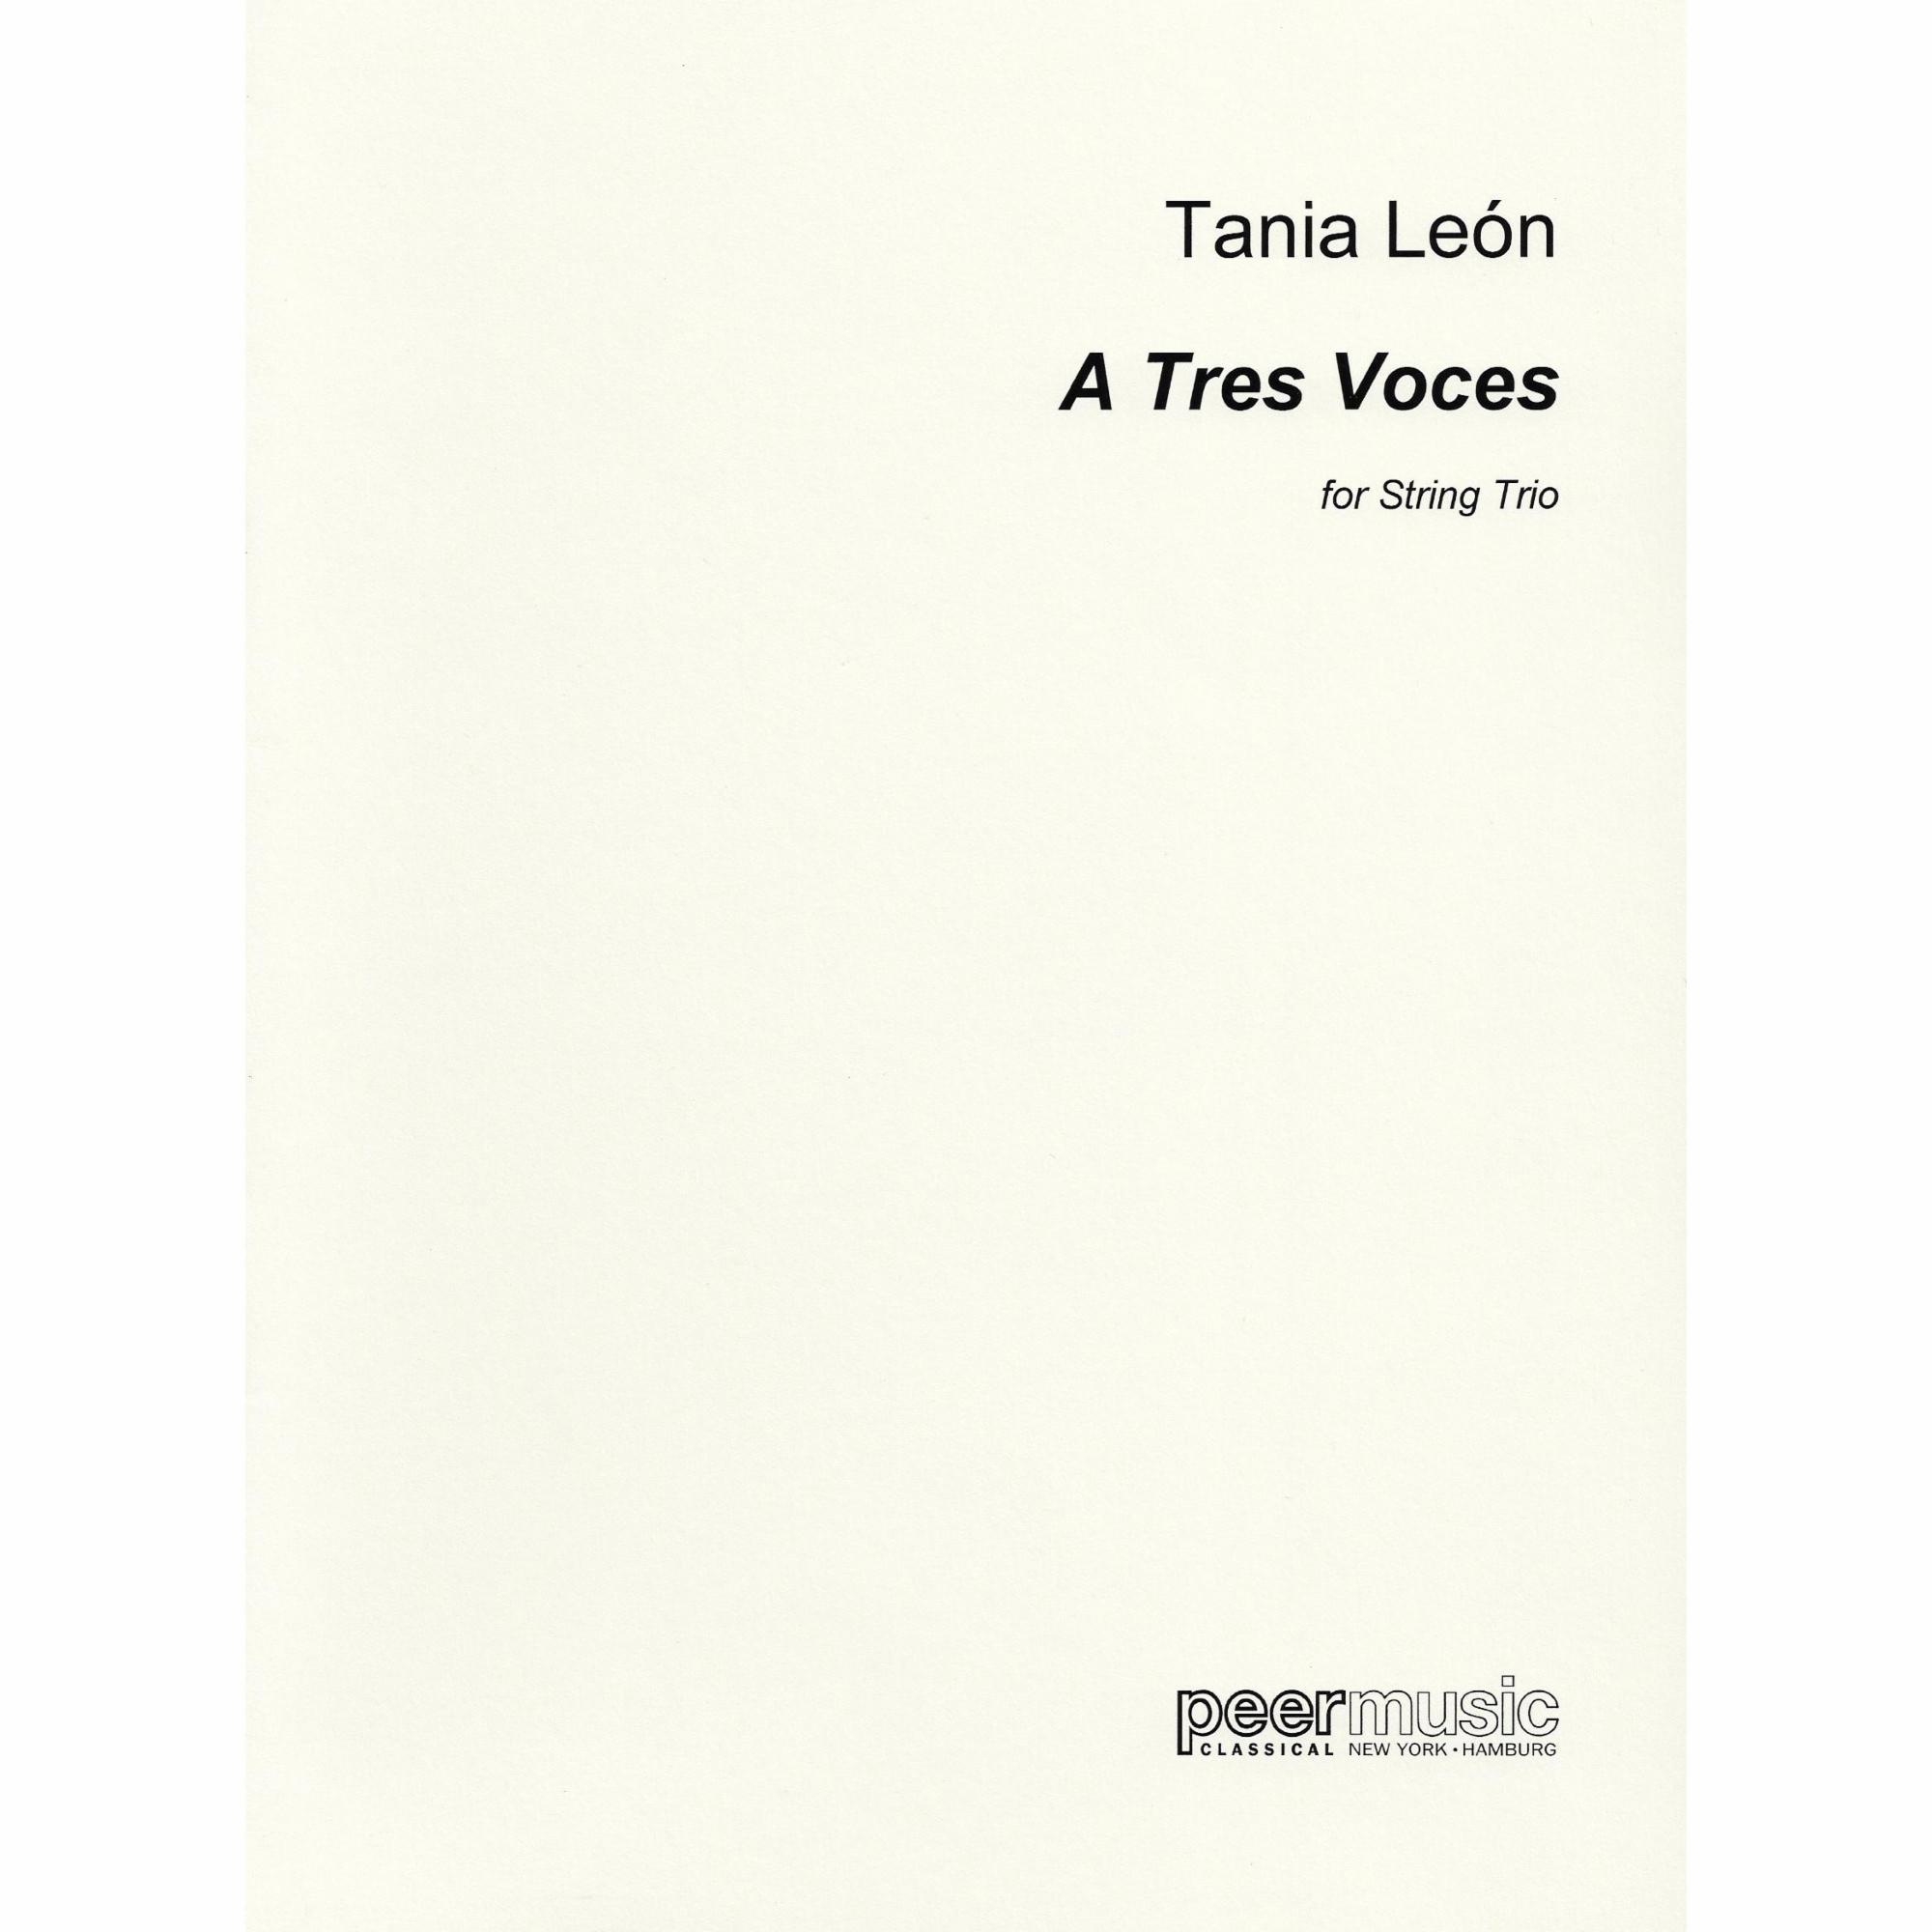 Leon -- A Tres Voces for String Trio